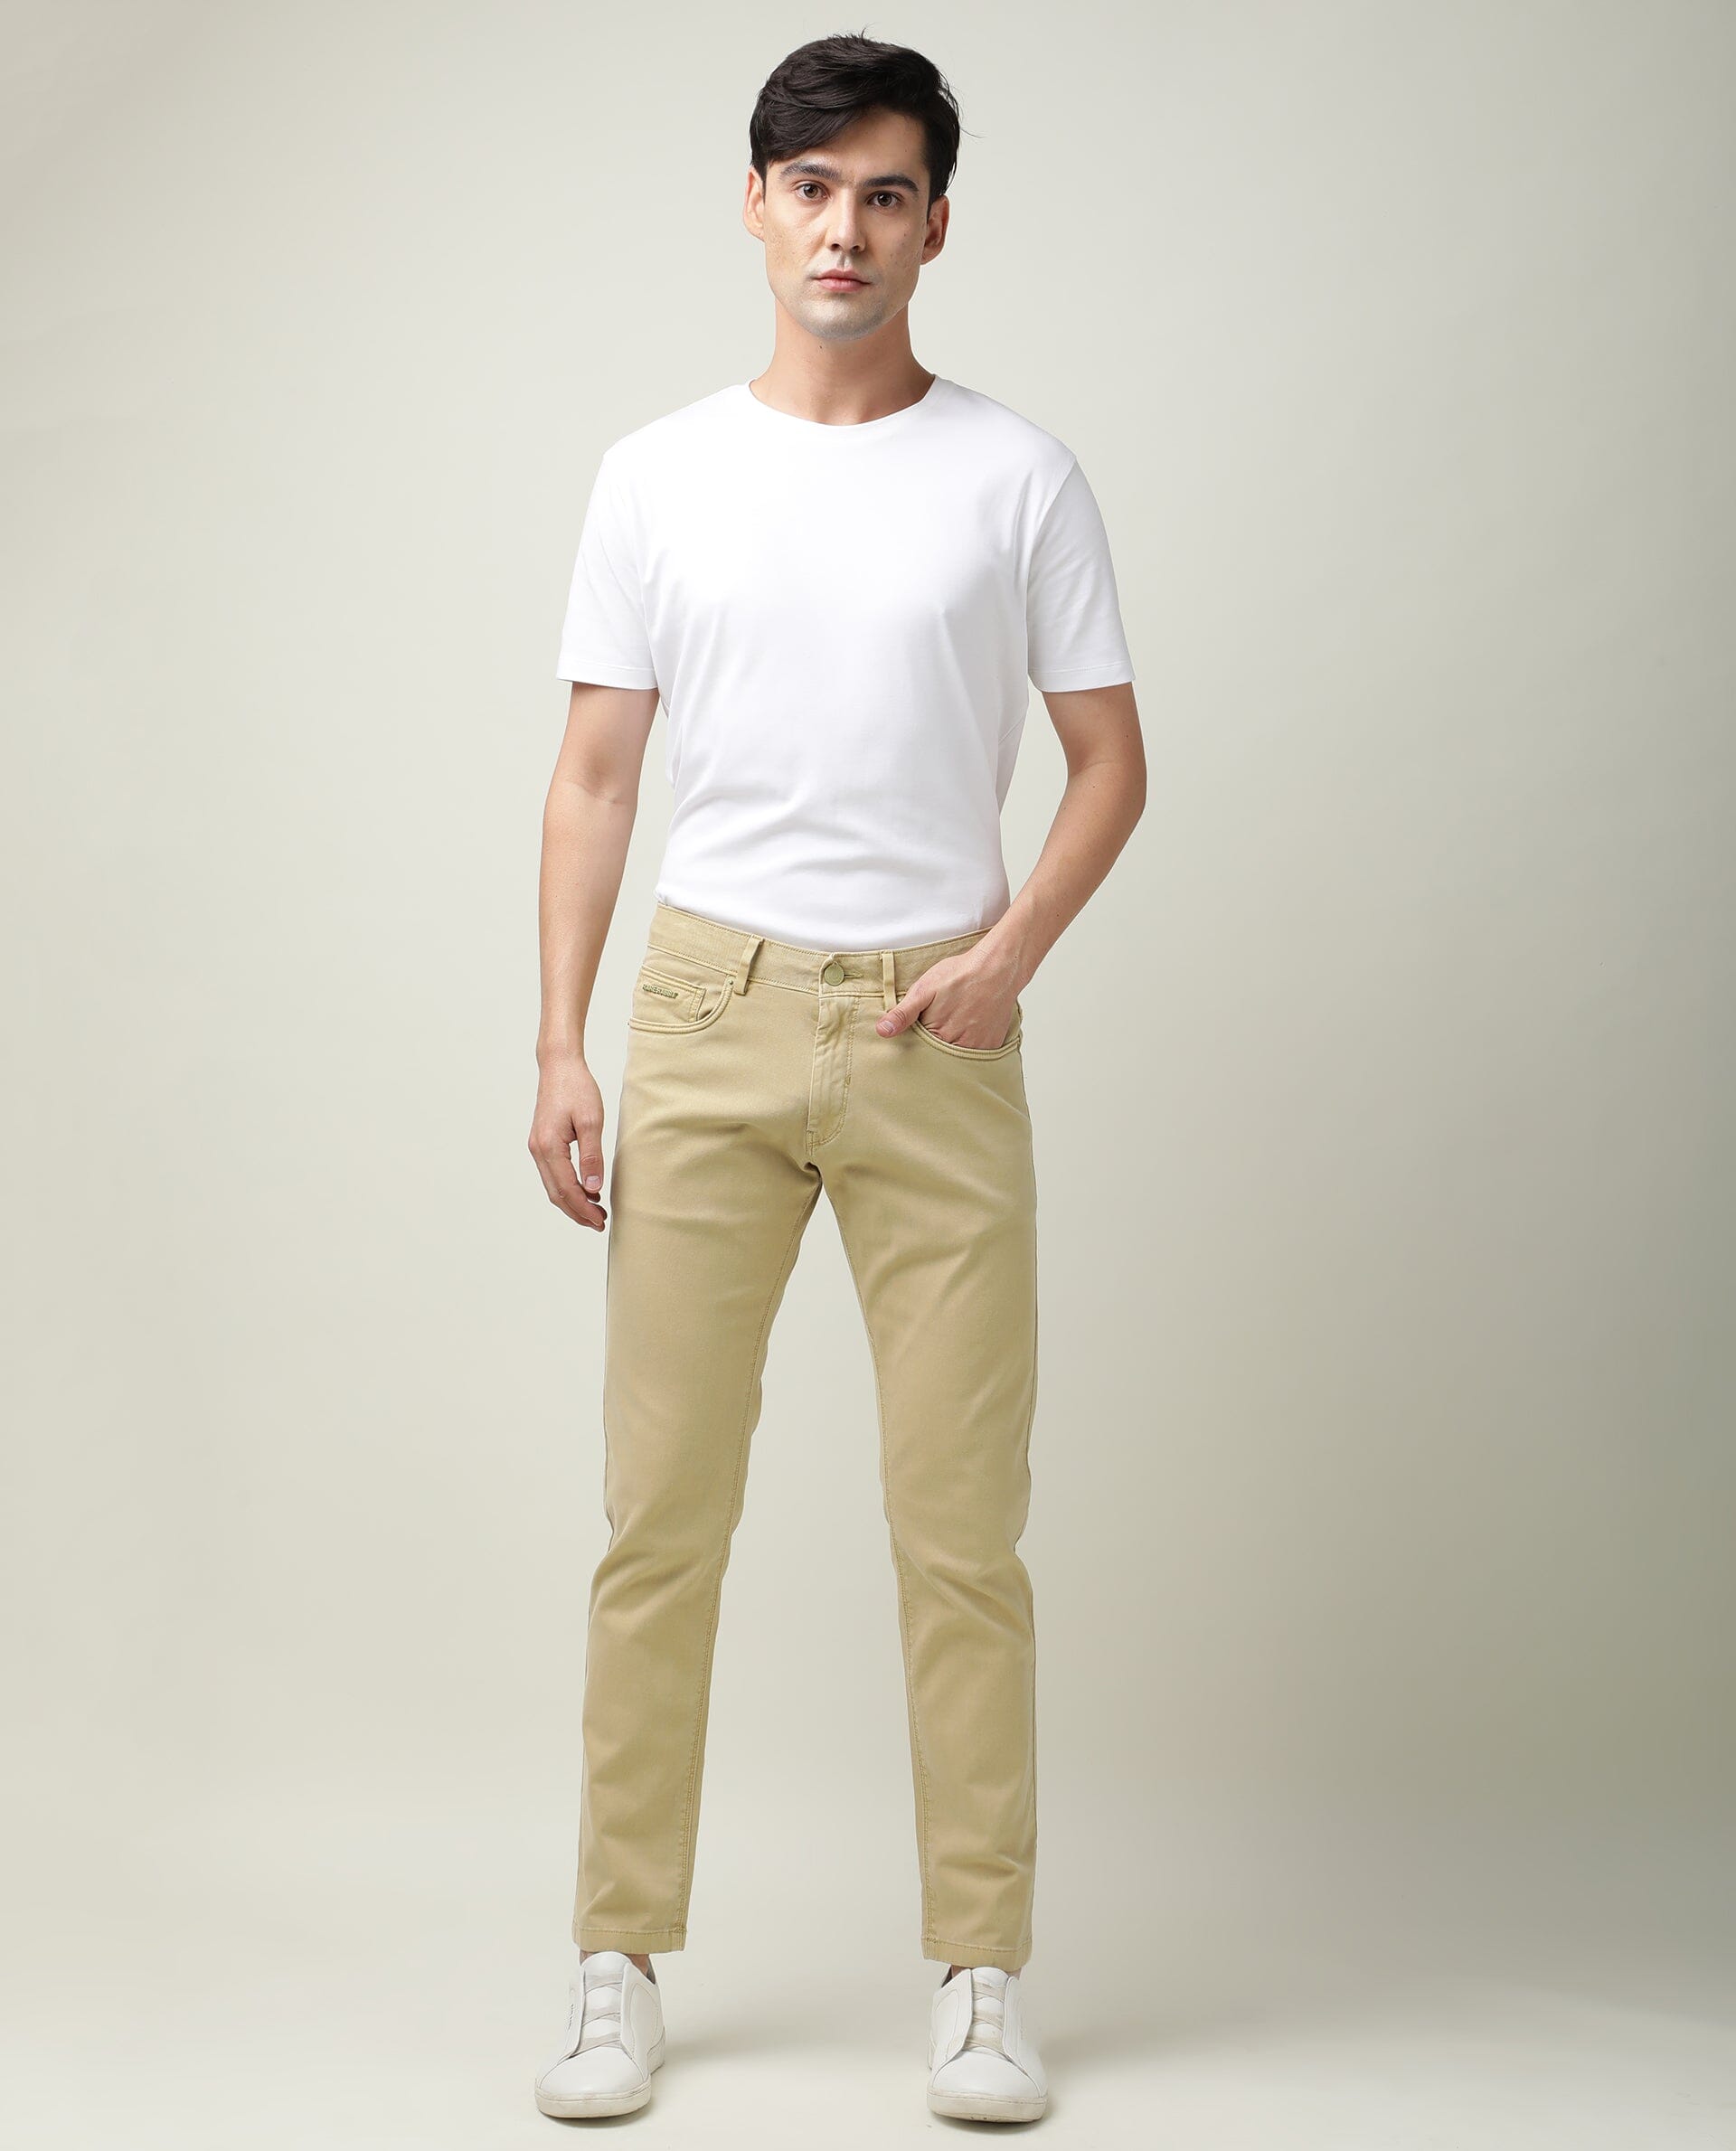 Victorious Men's Spandex Color Skinny Jeans Stretch Colored Pants  DL937-PART-1 - Lacadives